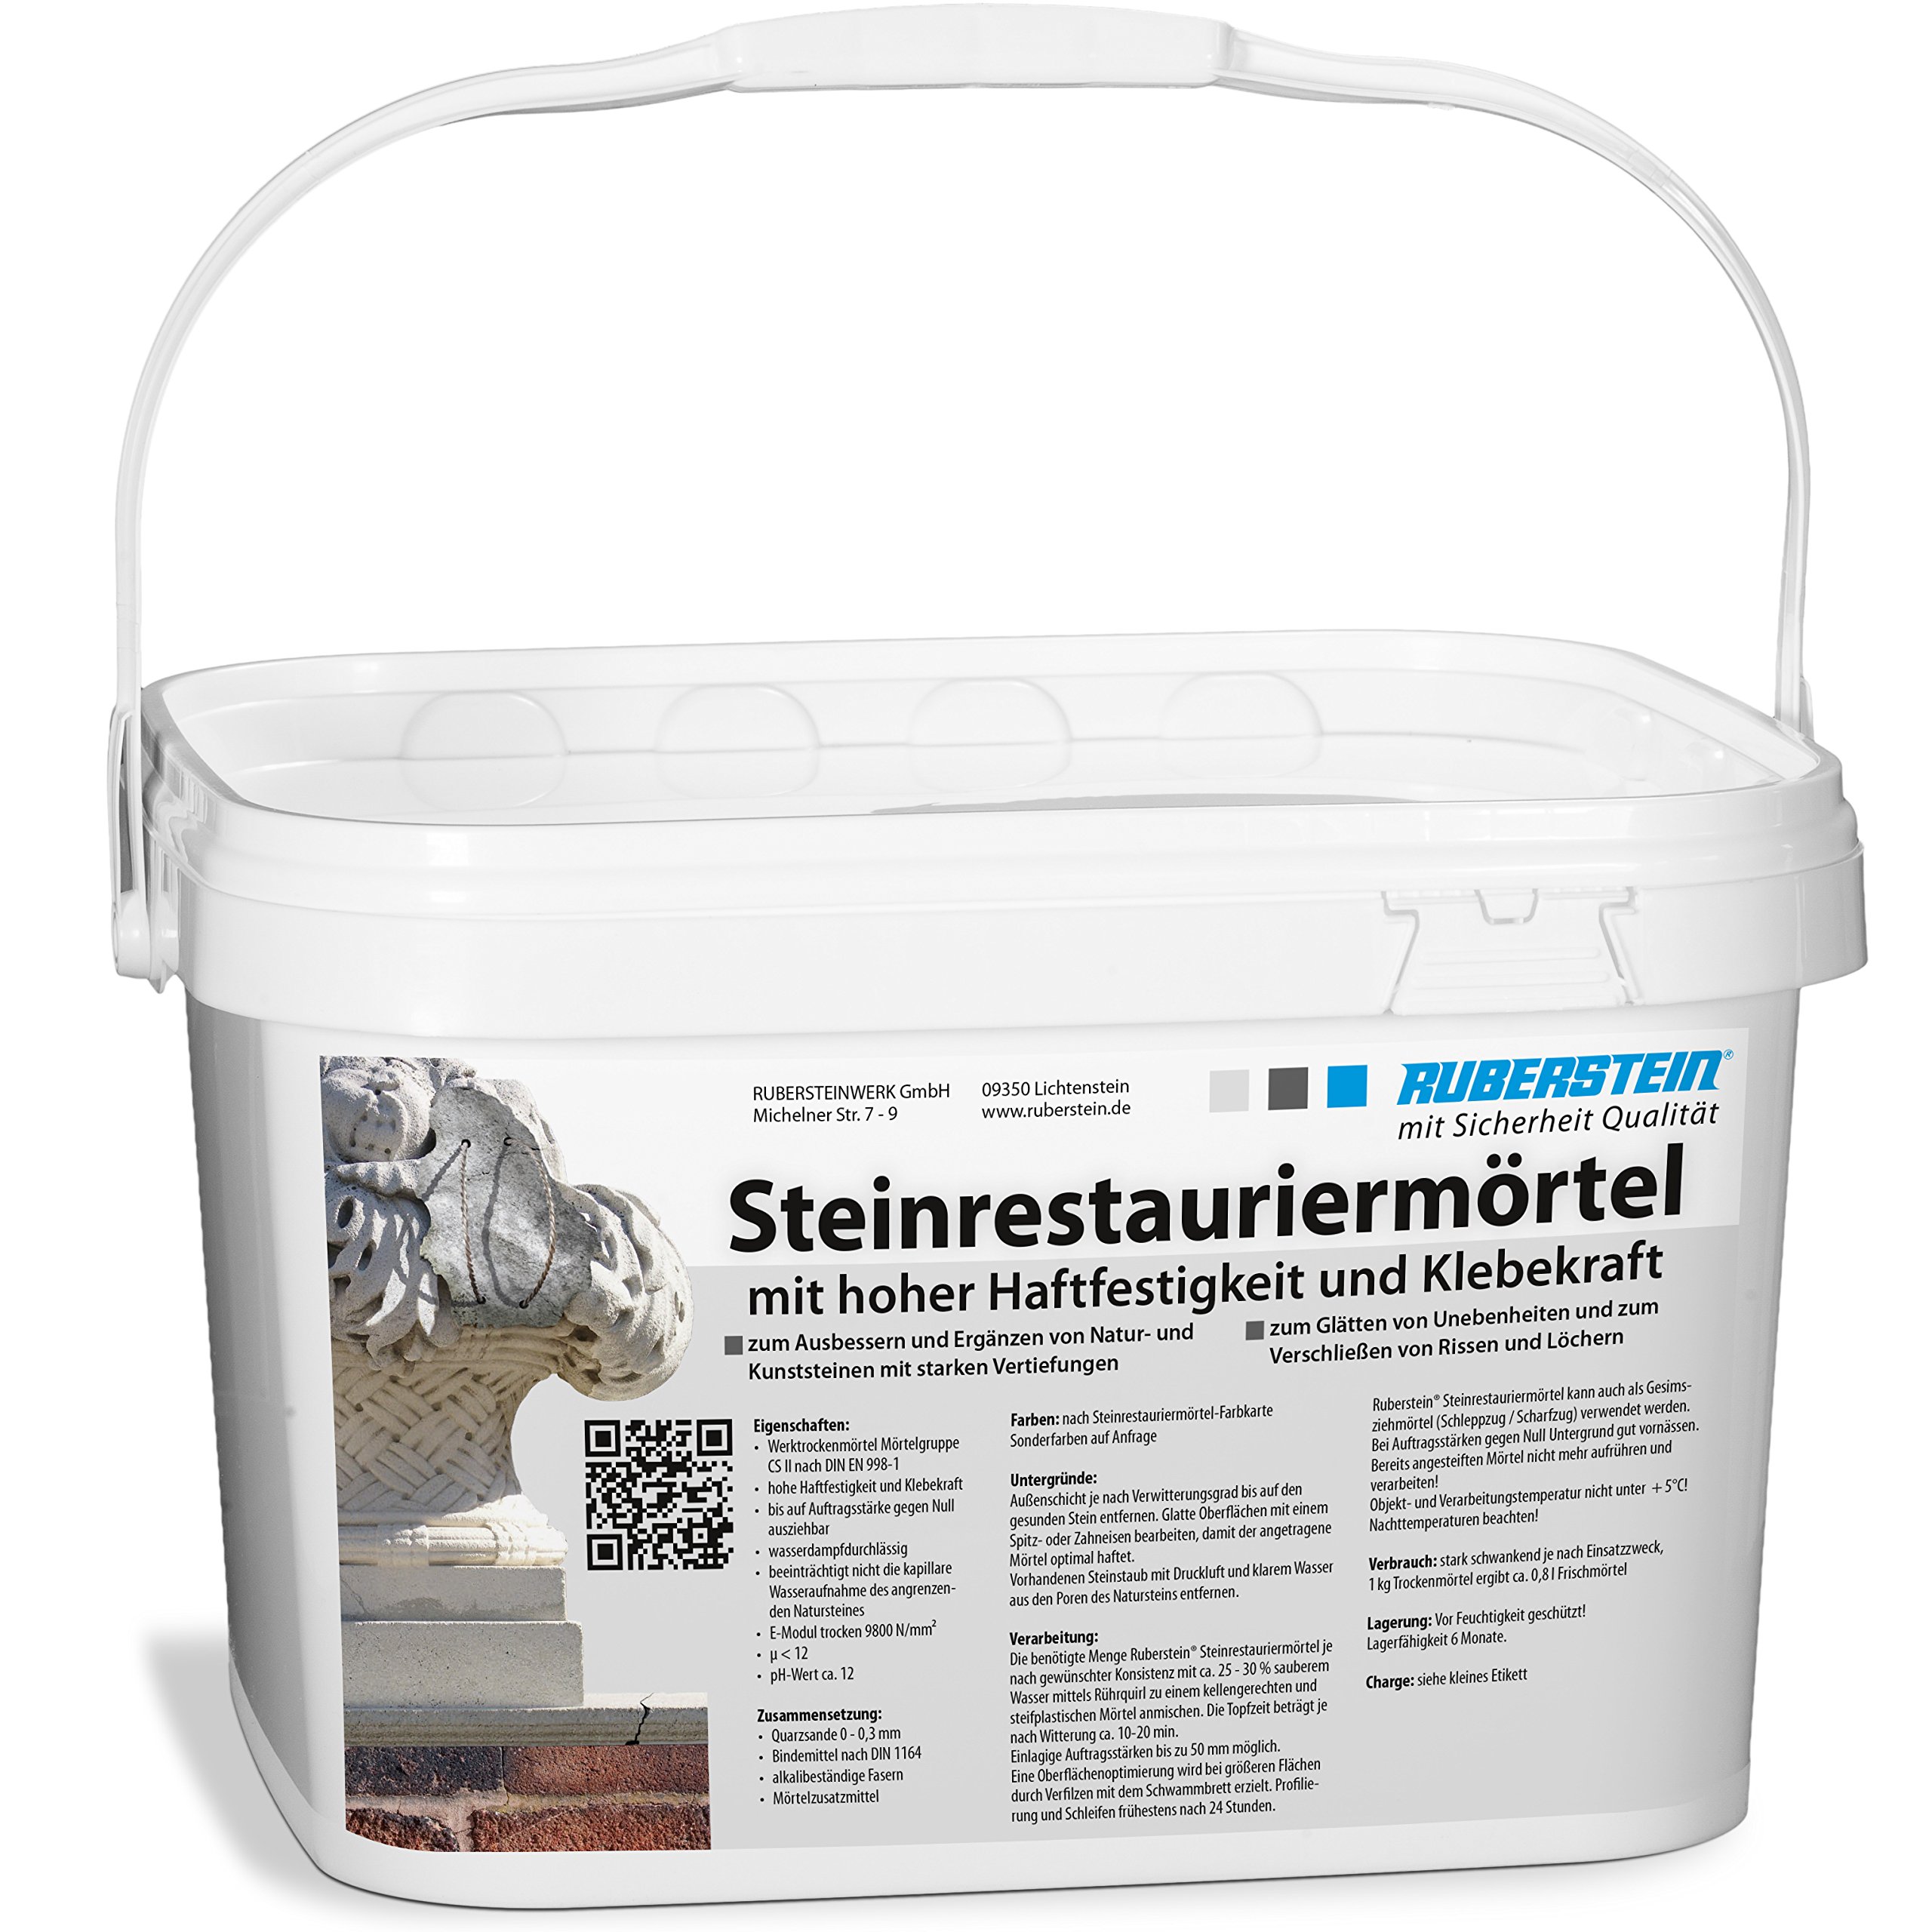 Ruberstein® Steinrestauriermörtel/Reparaturmörtel/Mörtel für Sandstein 10 kg im Eimer (klinkerrot)